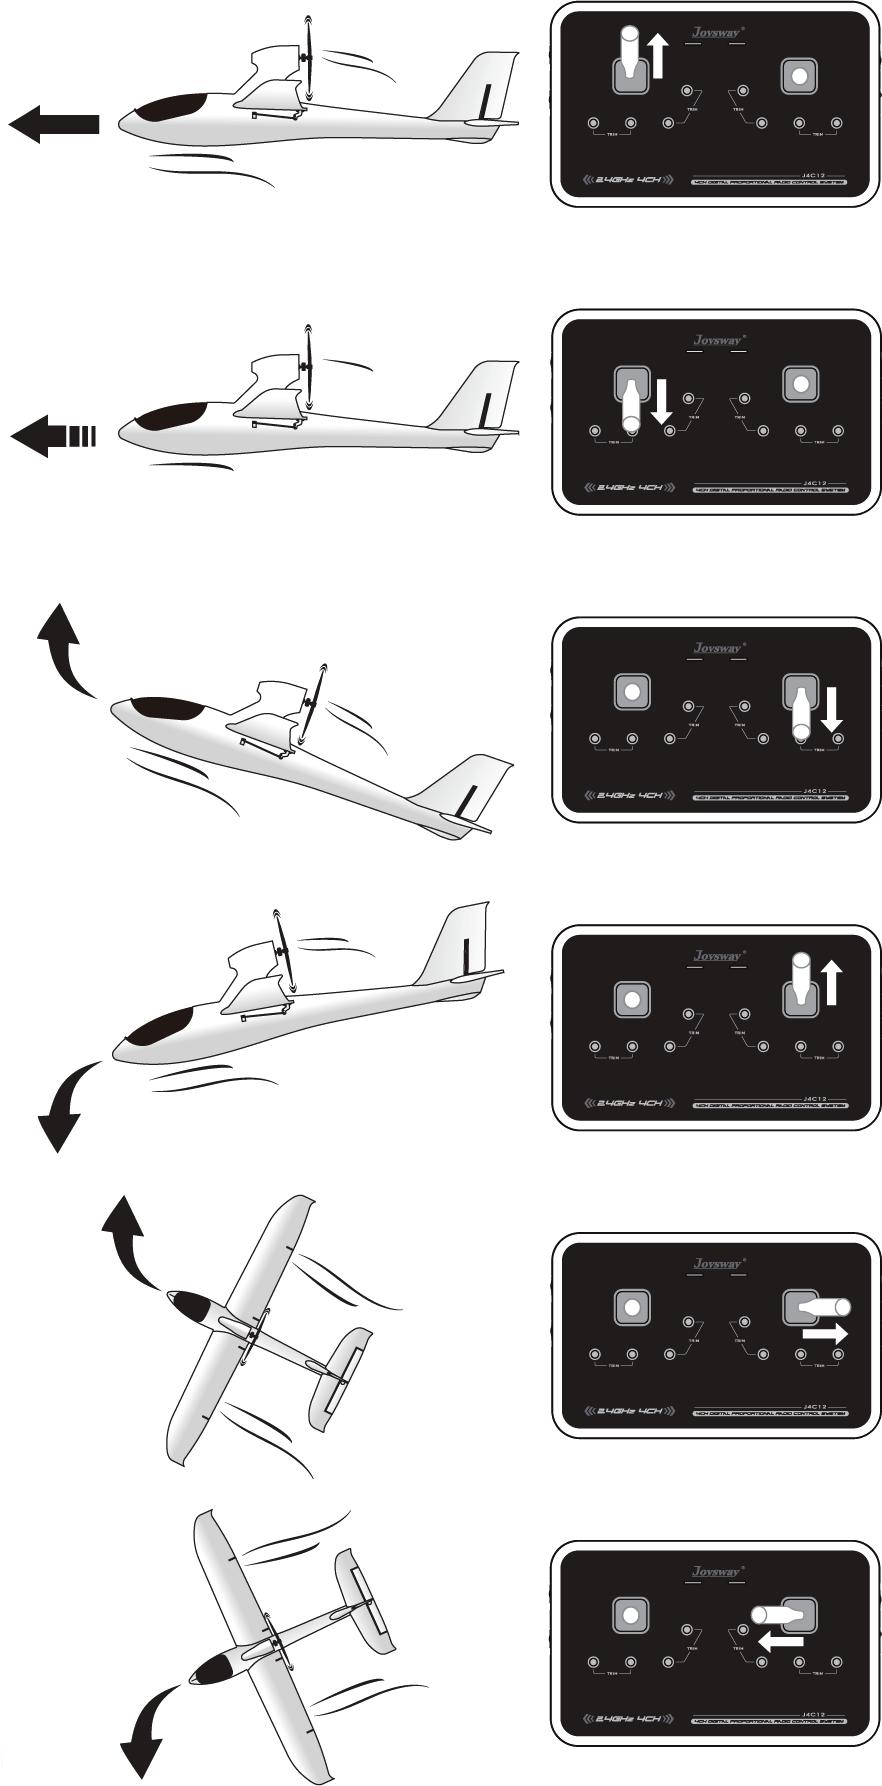 FLUGVORBREITUNG (MODE 2) Beschleunigen Linker Hebel nach oben Geschwindigkeit verringern Linker Hebel nach unten Aufsteigen Rechter Hebel nach unten Sinkflug Rechter Hebel nach oben Nase schwenkt